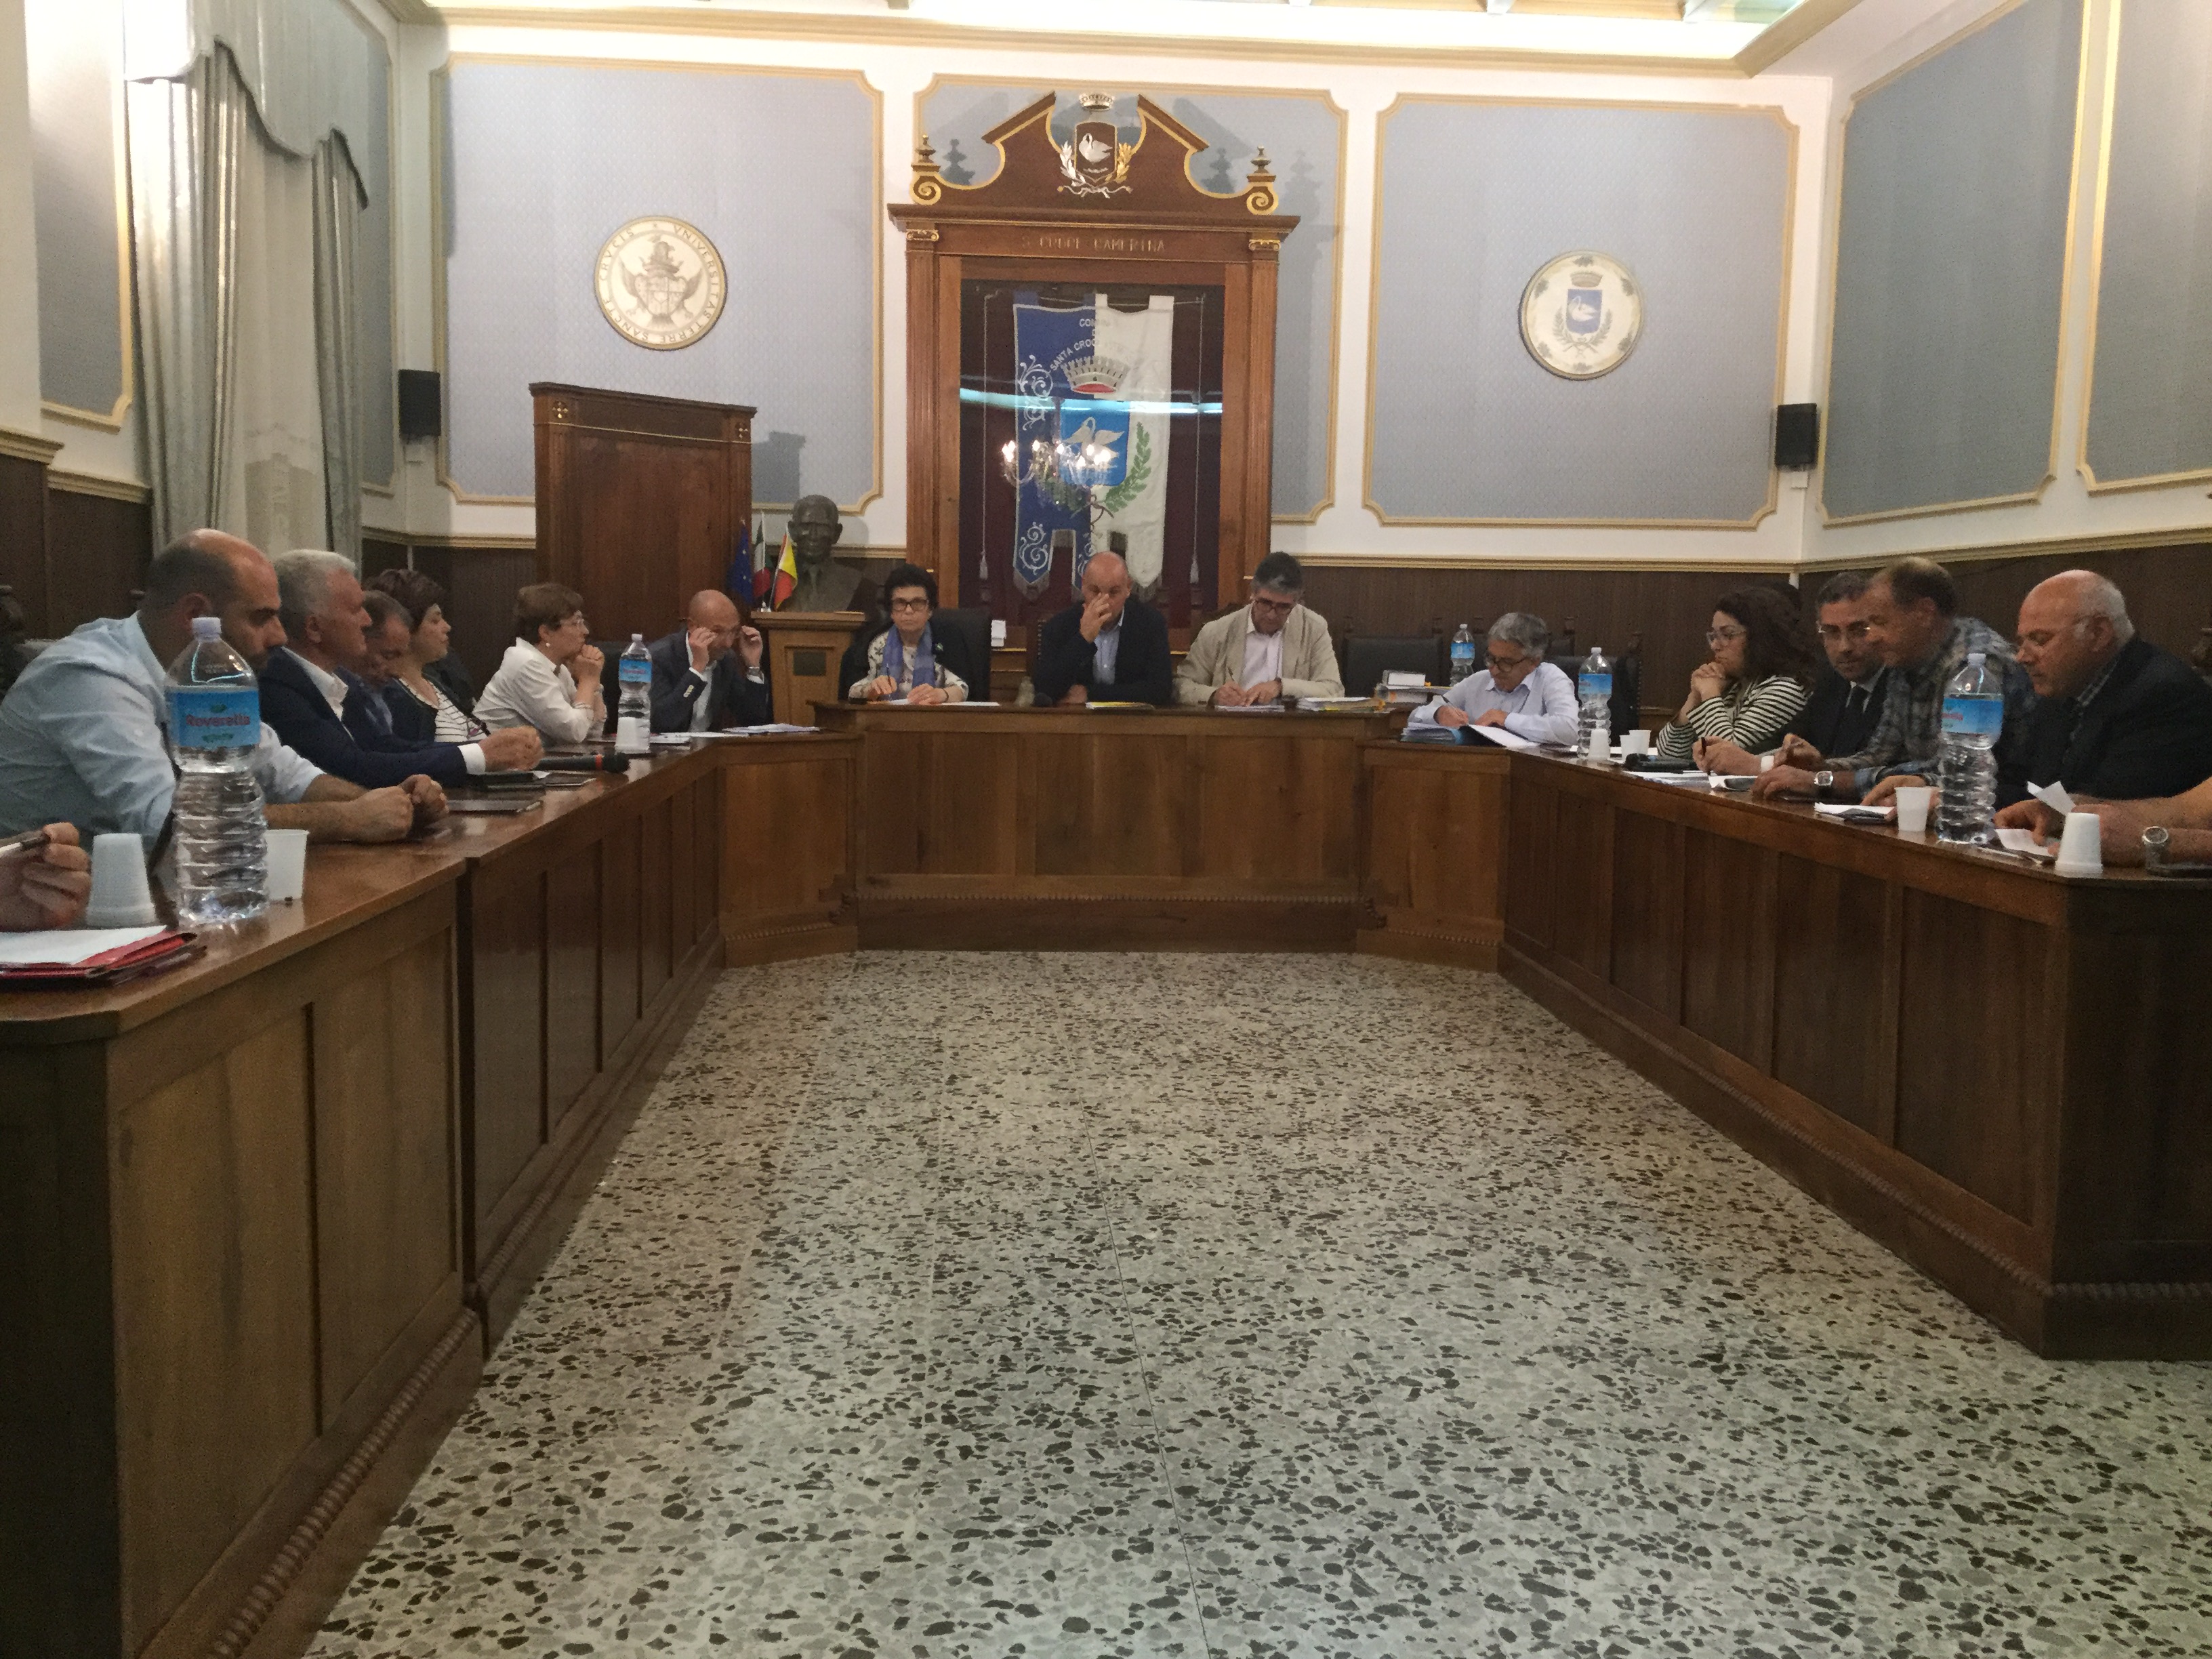  Consiglio, approvato il Bilancio di previsione: l’opposizione esce dall’aula